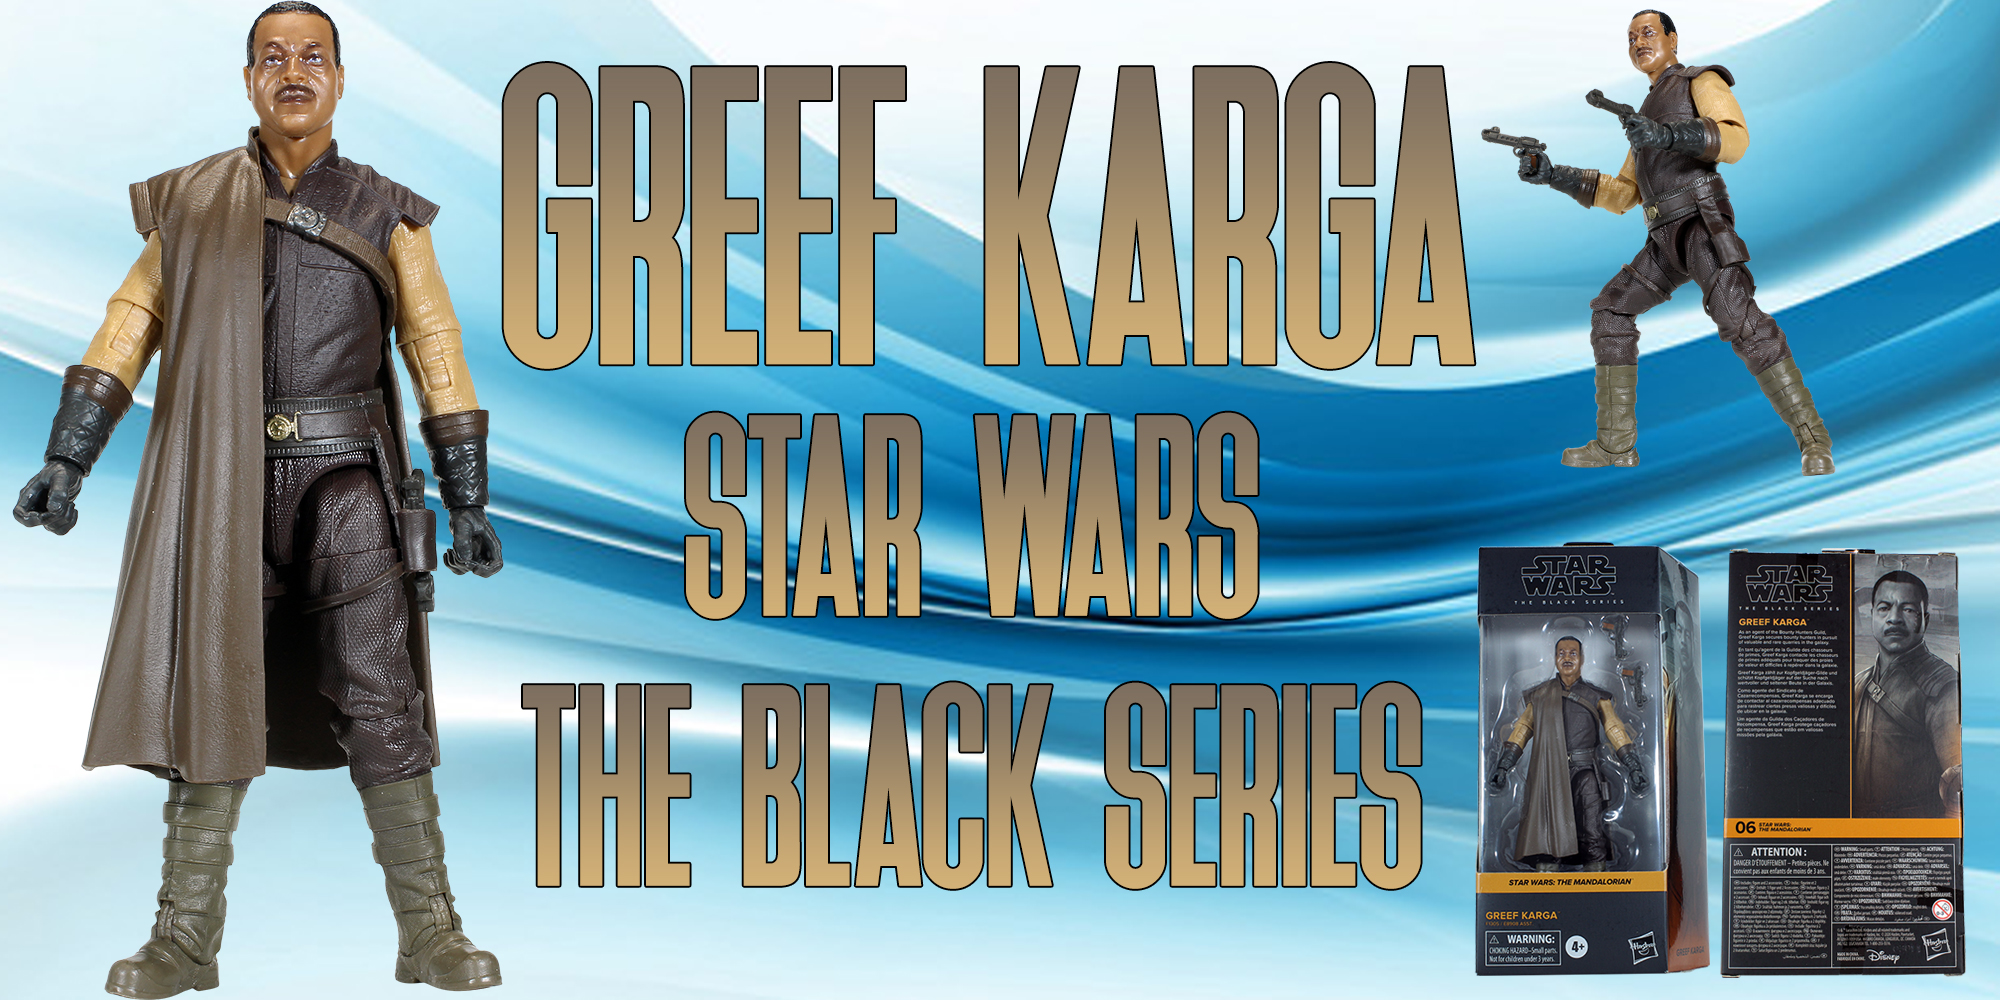 Black Series Greef Karga